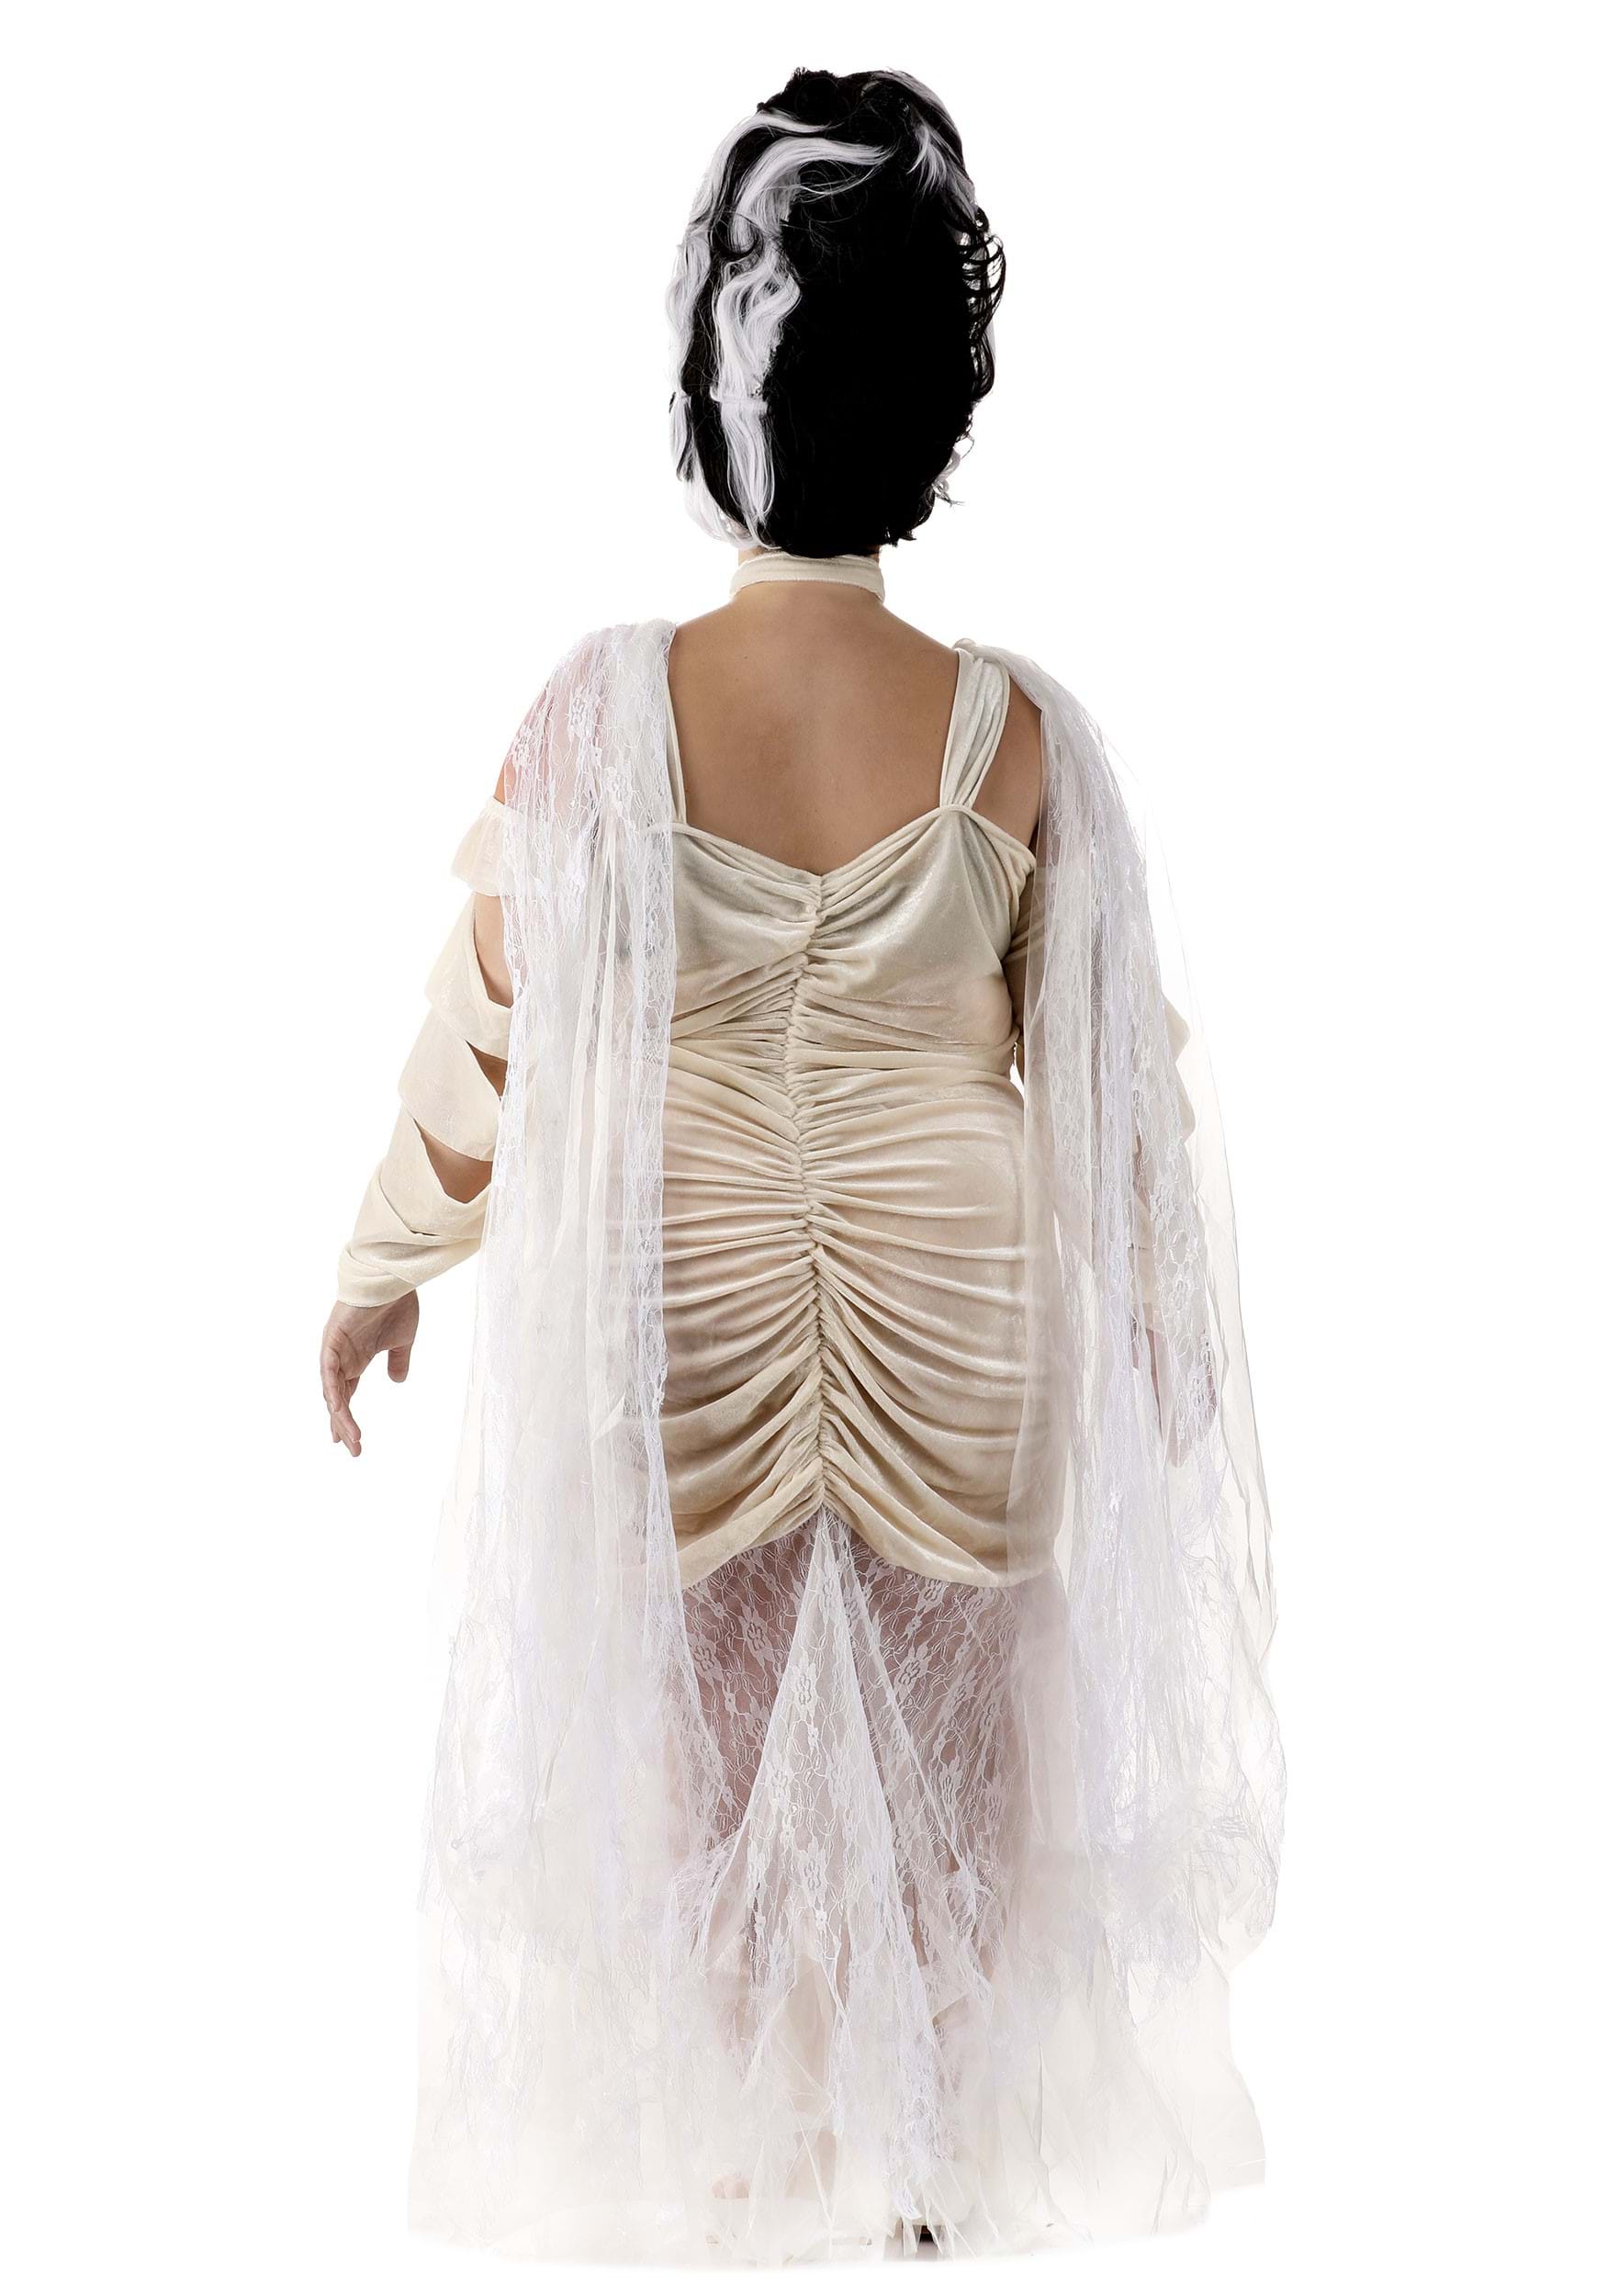 Plus Size Bride Of Frankenstein Women's Fancy Dress Costume